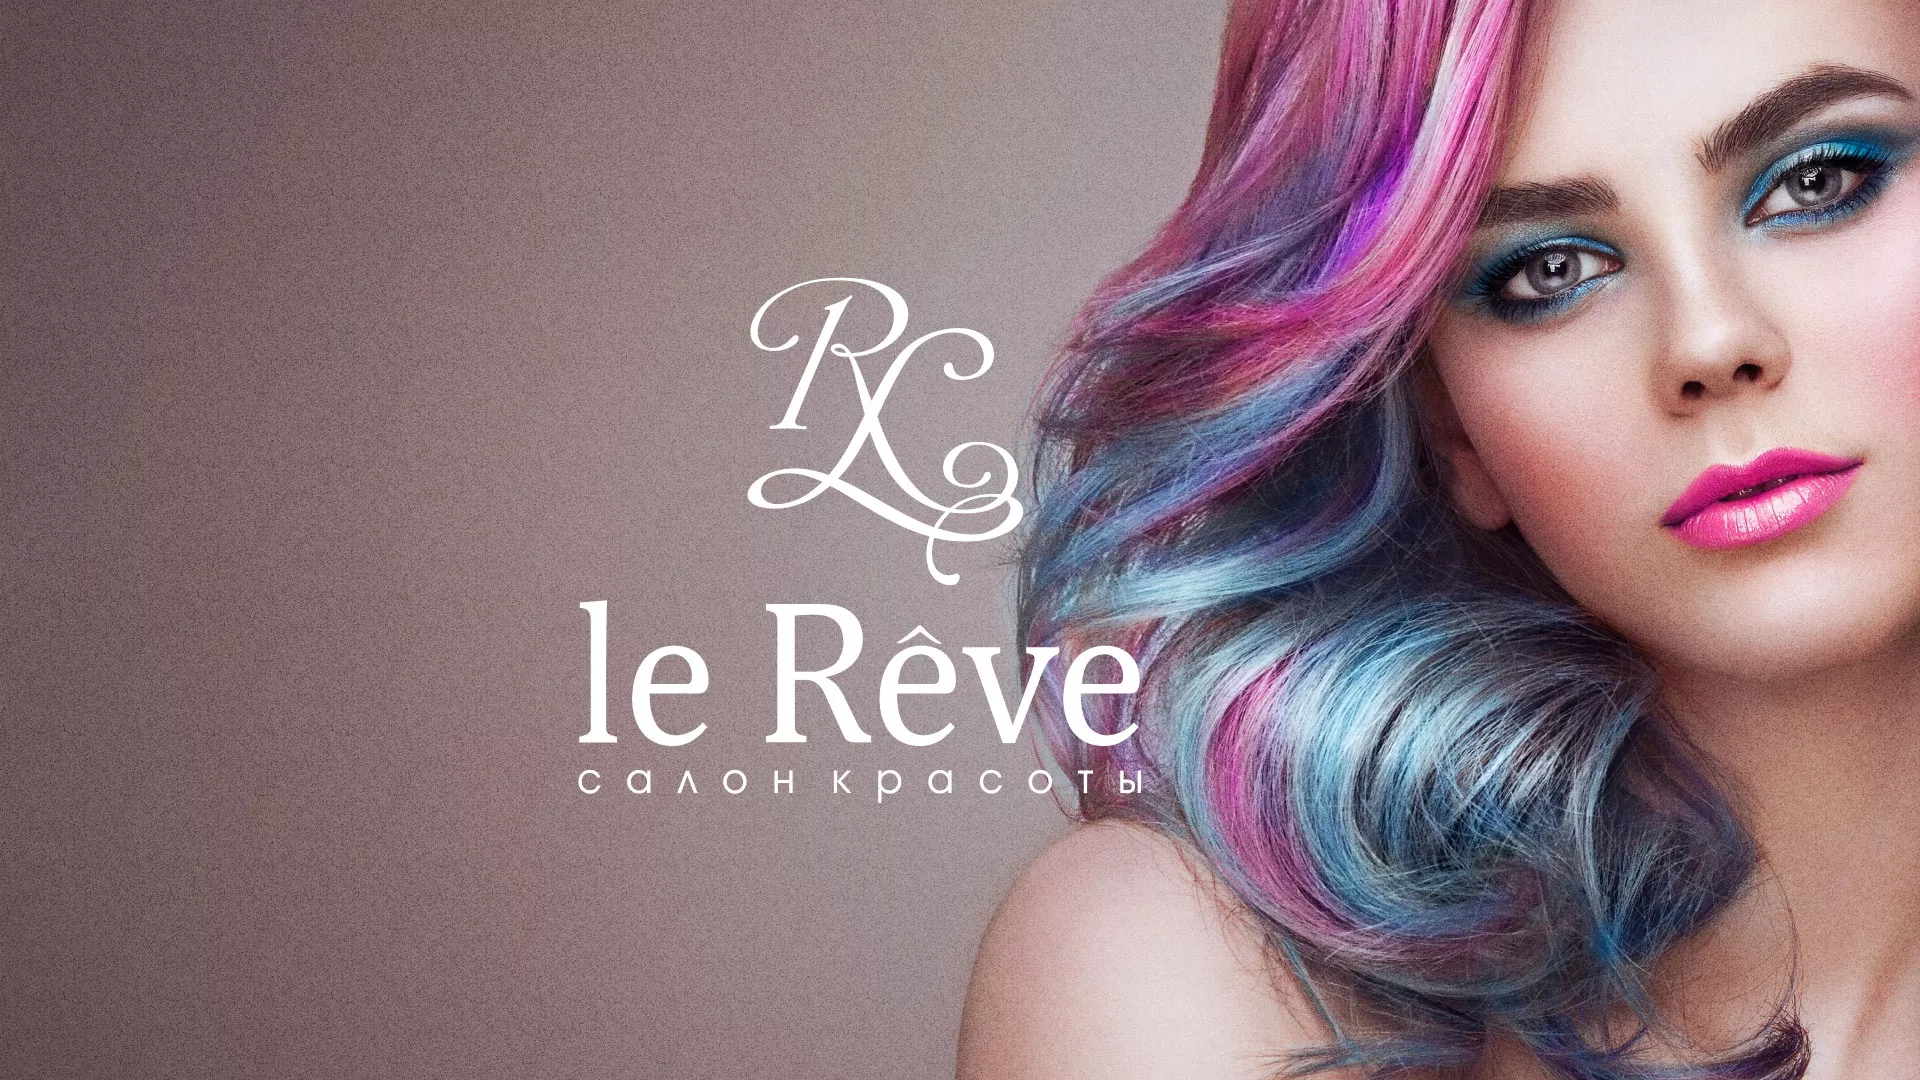 Создание сайта для салона красоты «Le Reve» в Рязани